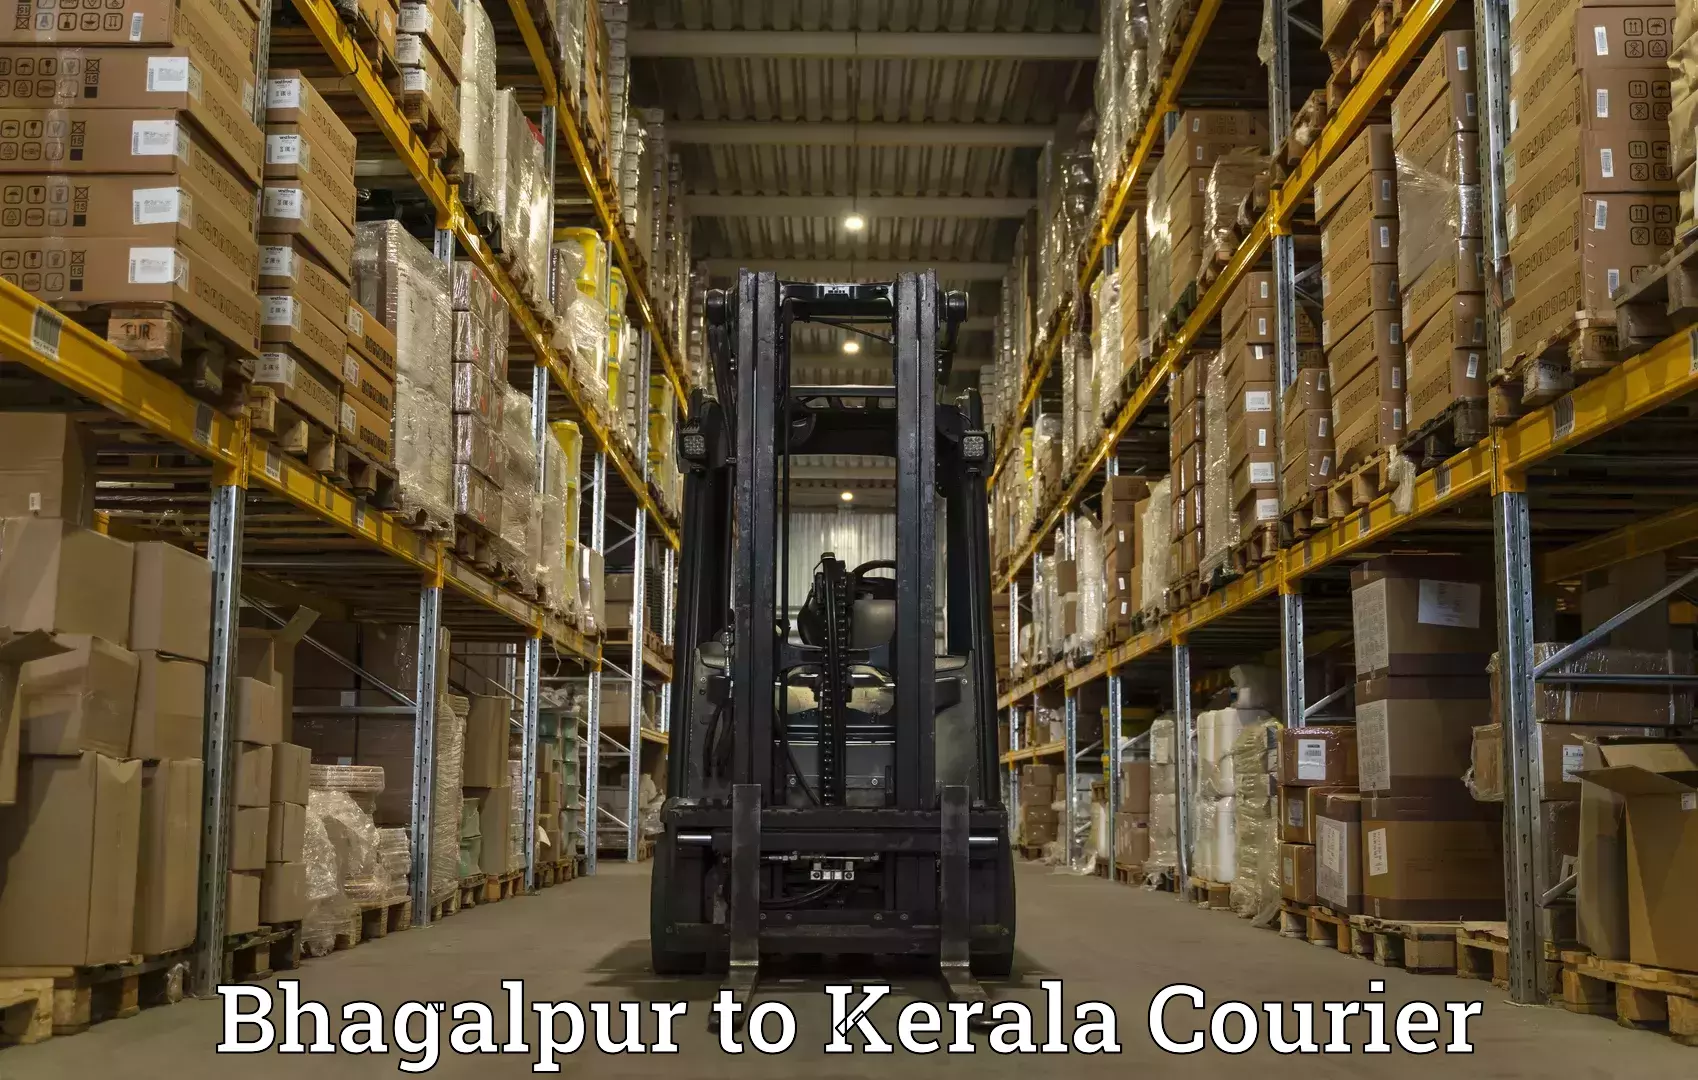 Cargo delivery service Bhagalpur to Koyilandy